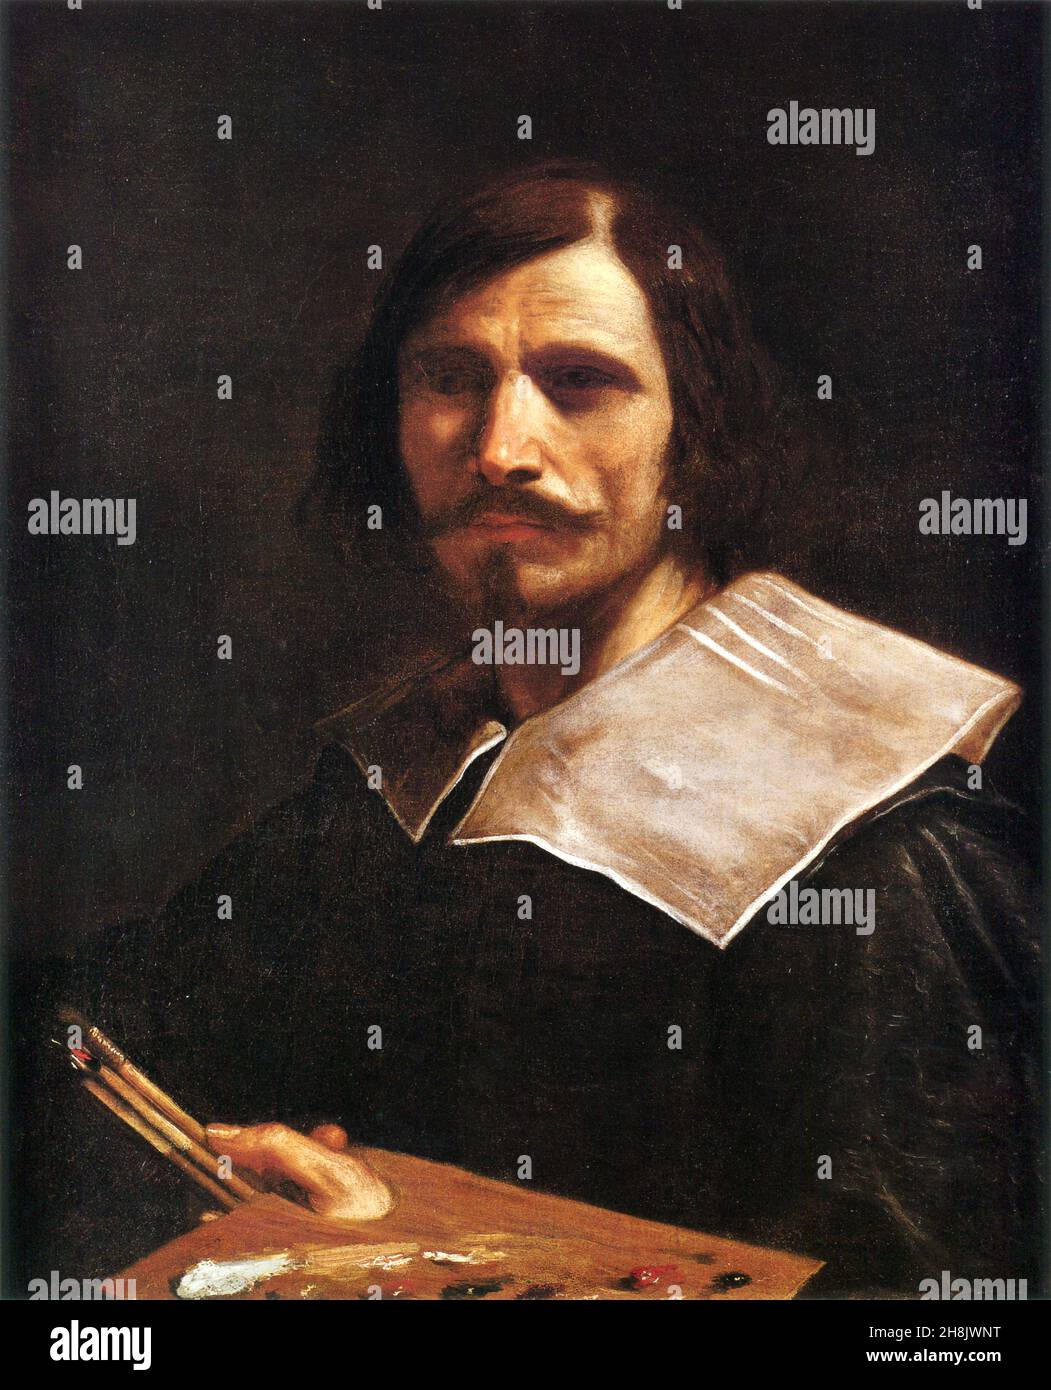 Guercino, Giovanni Francesco Barbieri (1591 – 1666),[1] conocido como Guercino o il Guercino, pintor barroco italiano, autorretrato Foto de stock